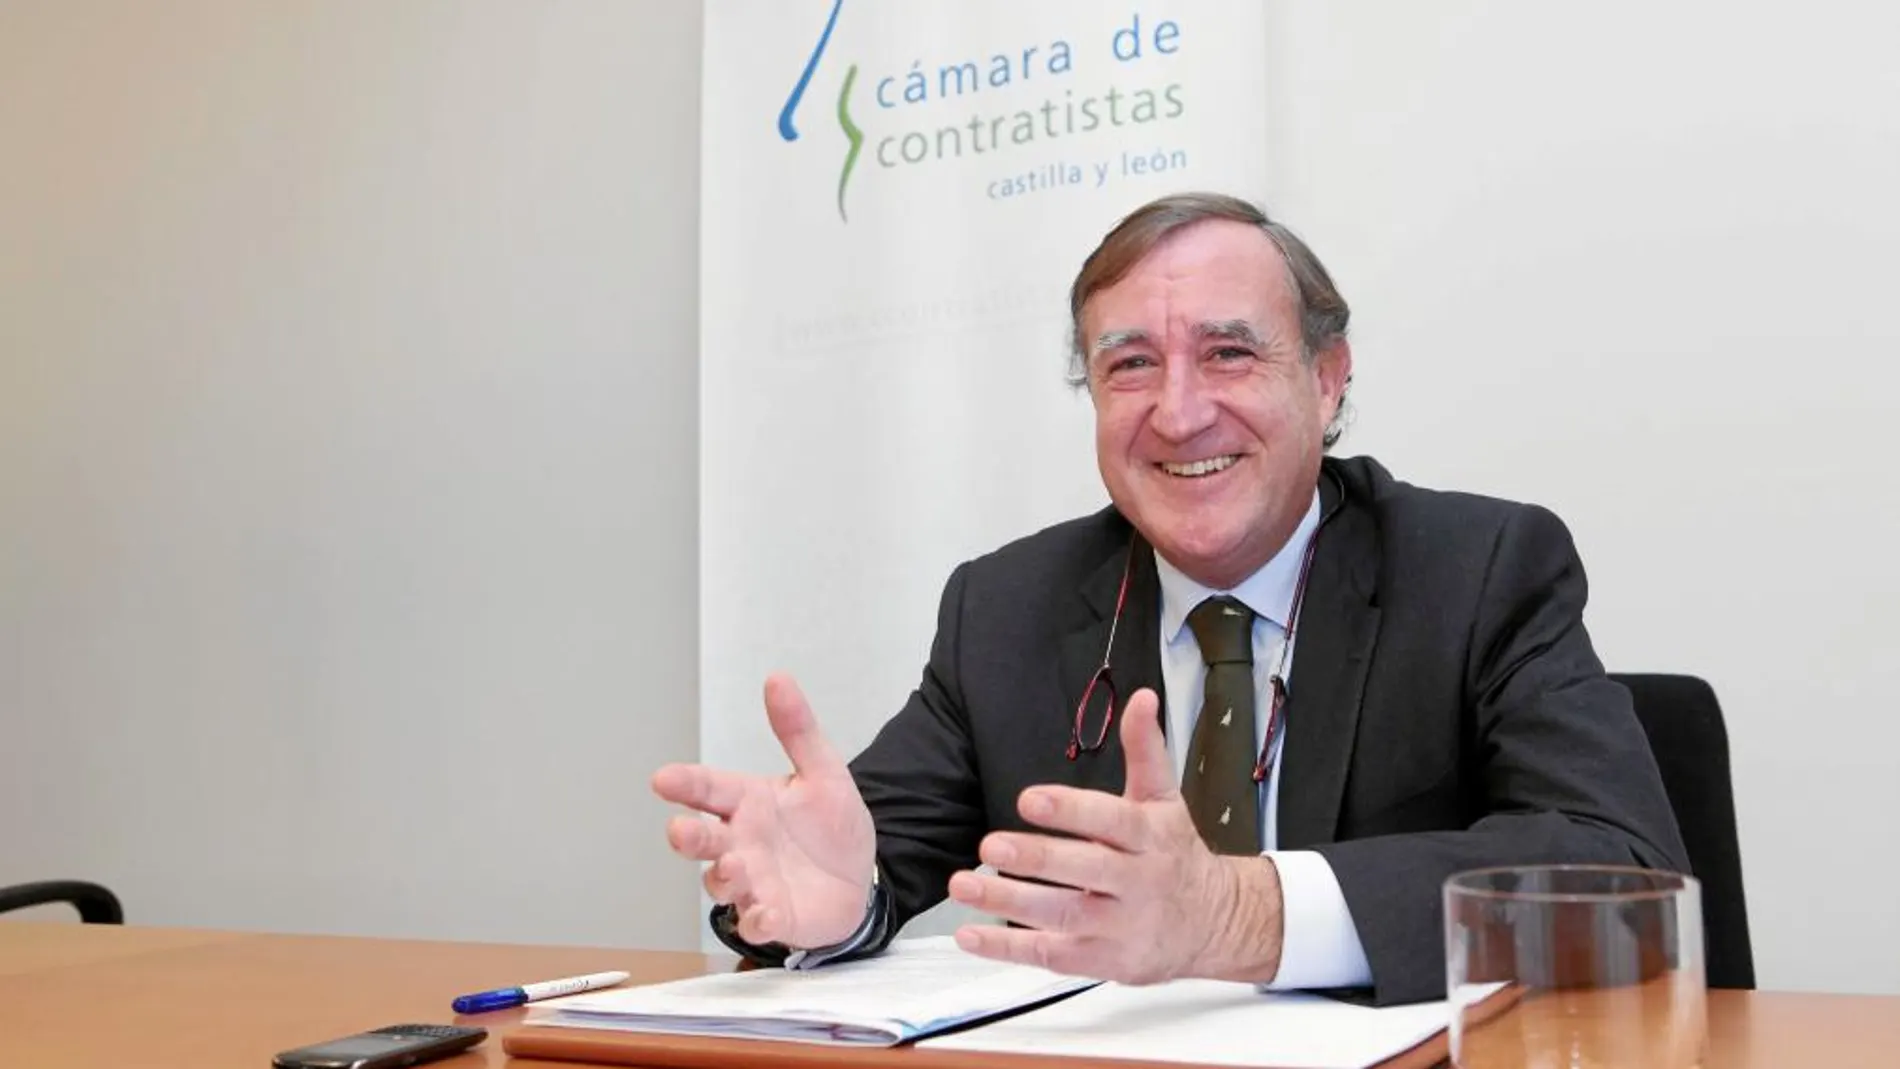 El presidente de la Cámara de Contratistas de Castilla y León, Enrique Pascual